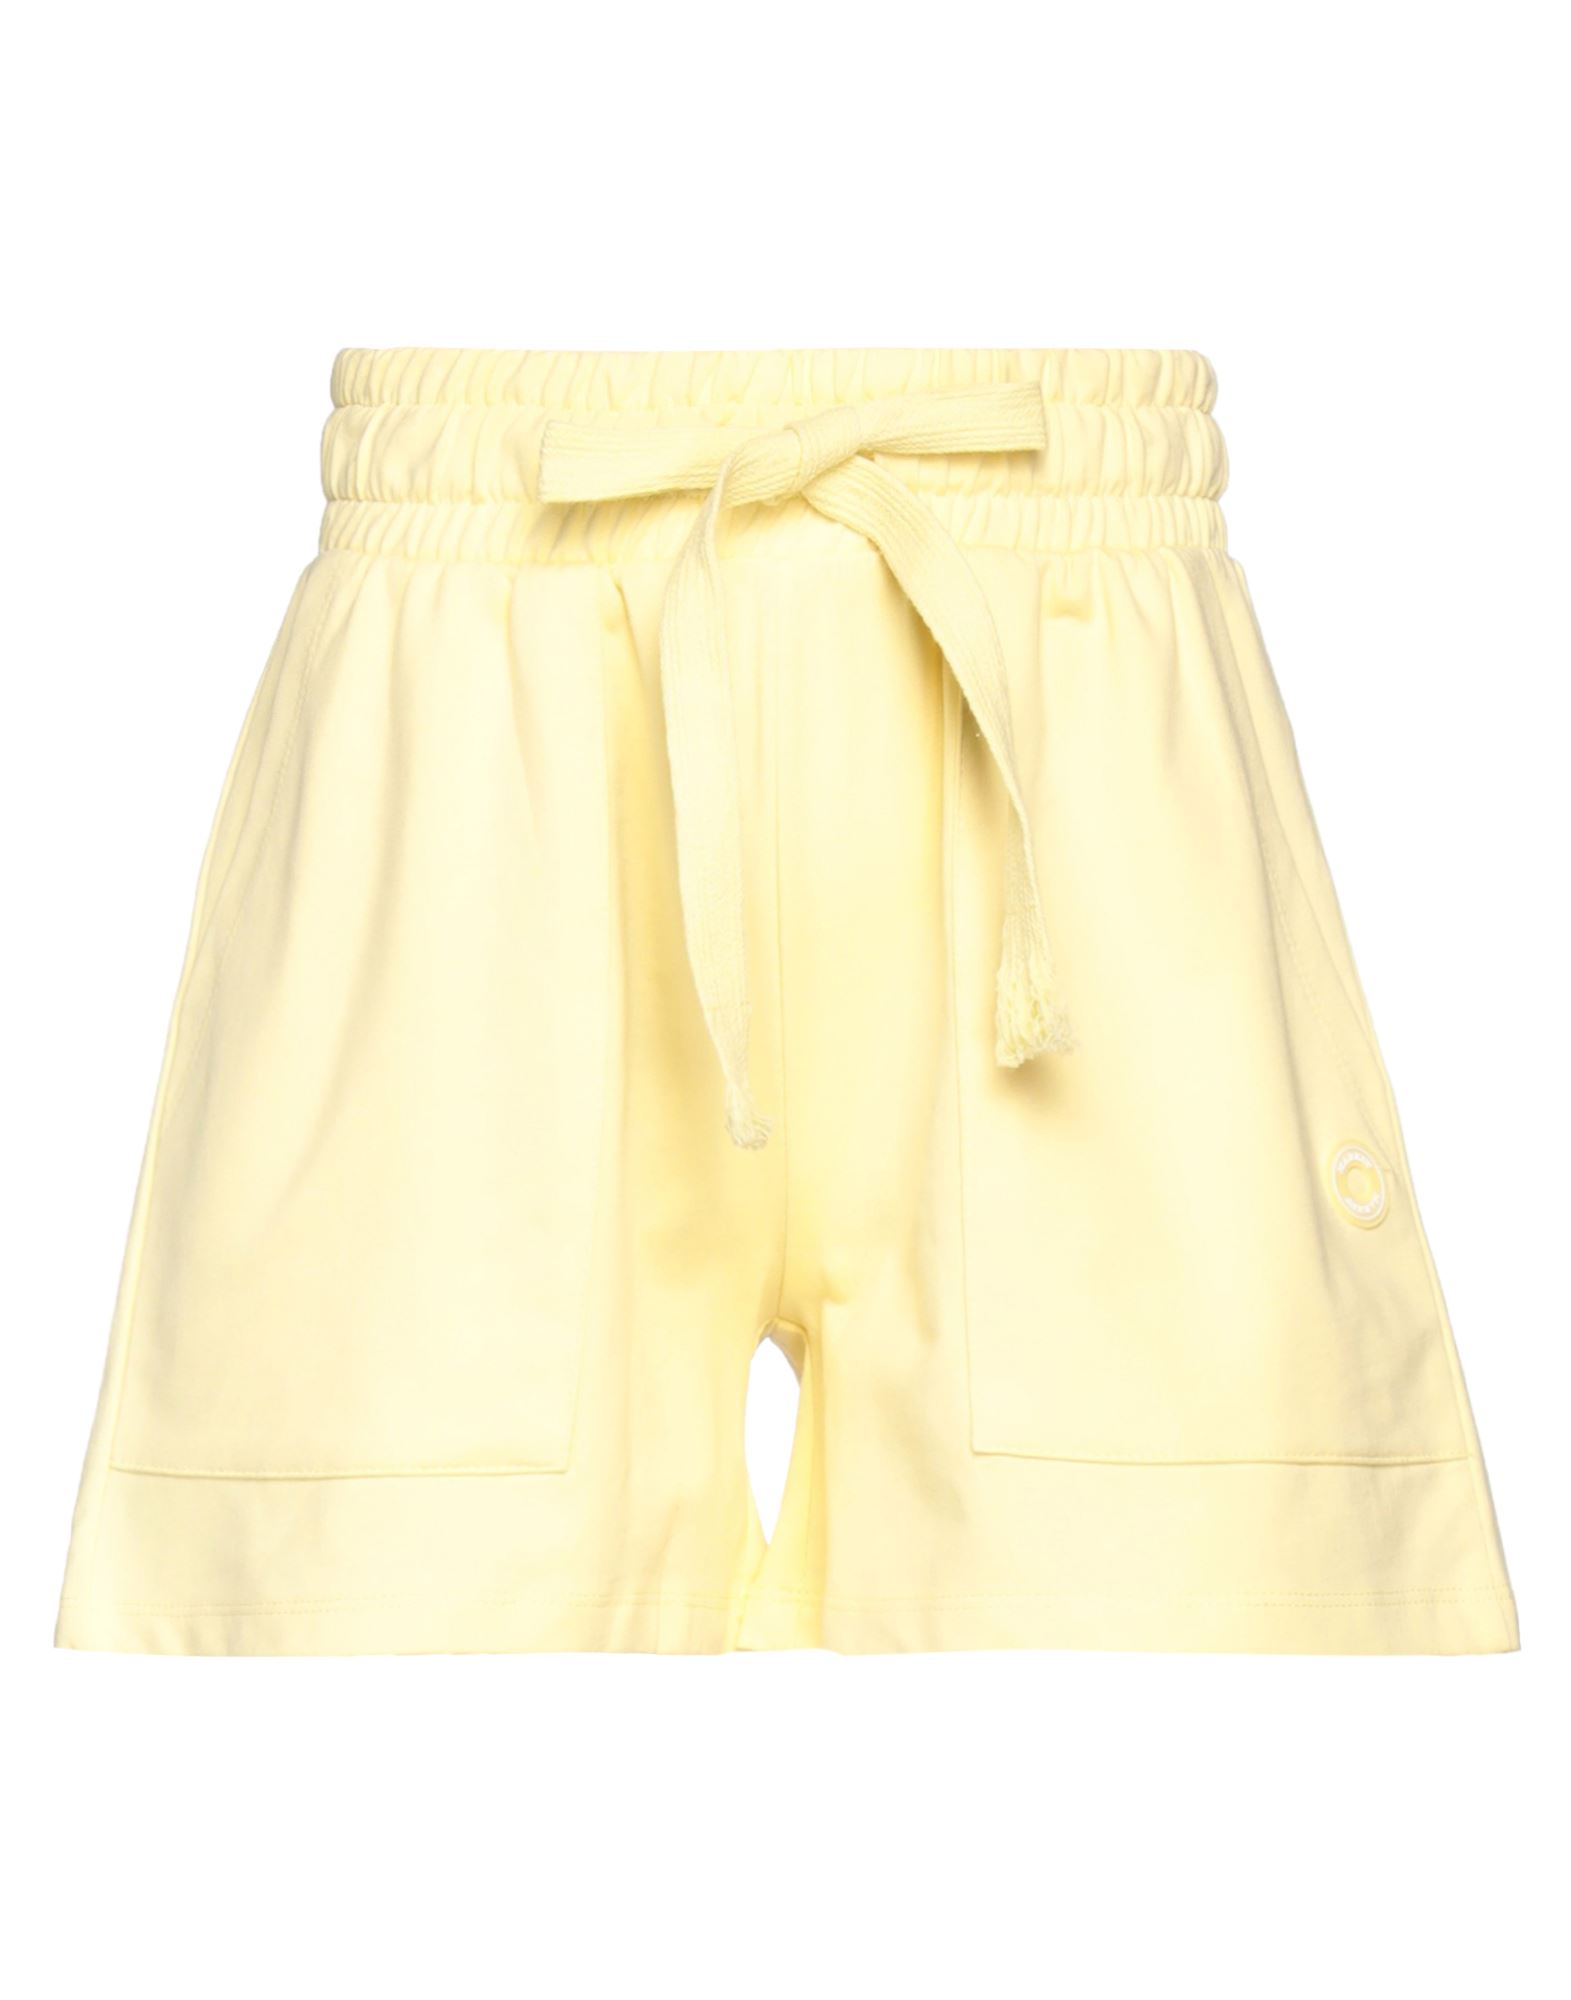 Markup Woman Shorts & Bermuda Shorts Light Yellow Size L Cotton